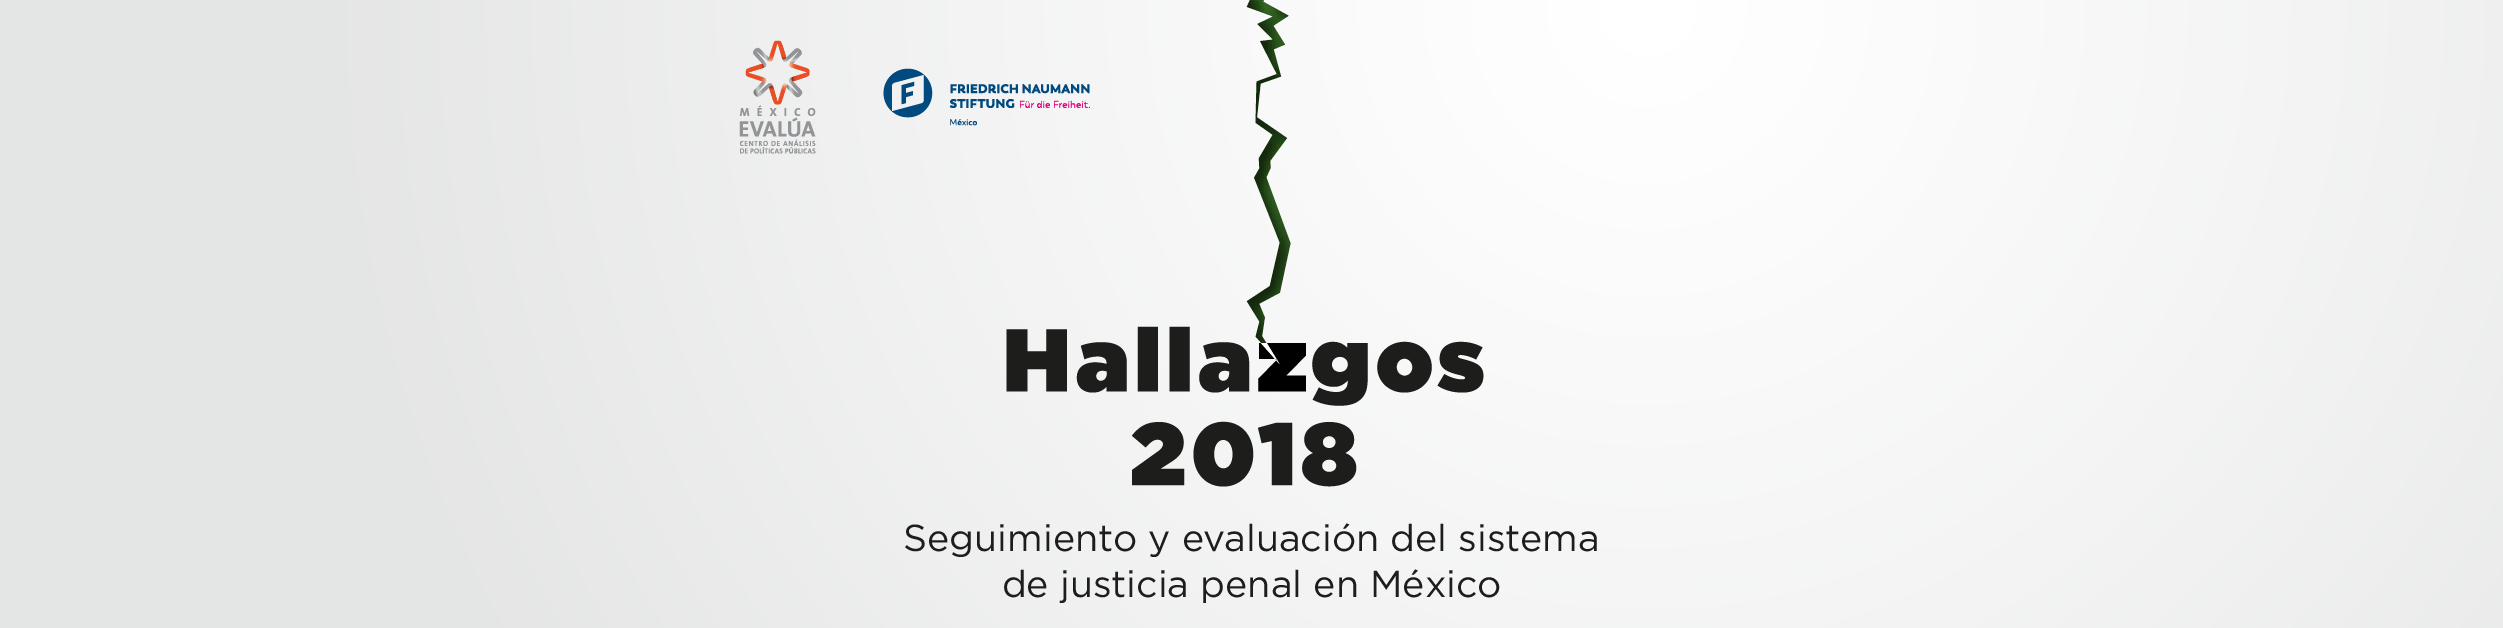 Hallazgos Logo - Hallazgos 2018: Seguimiento y evaluación del sistema de justicia